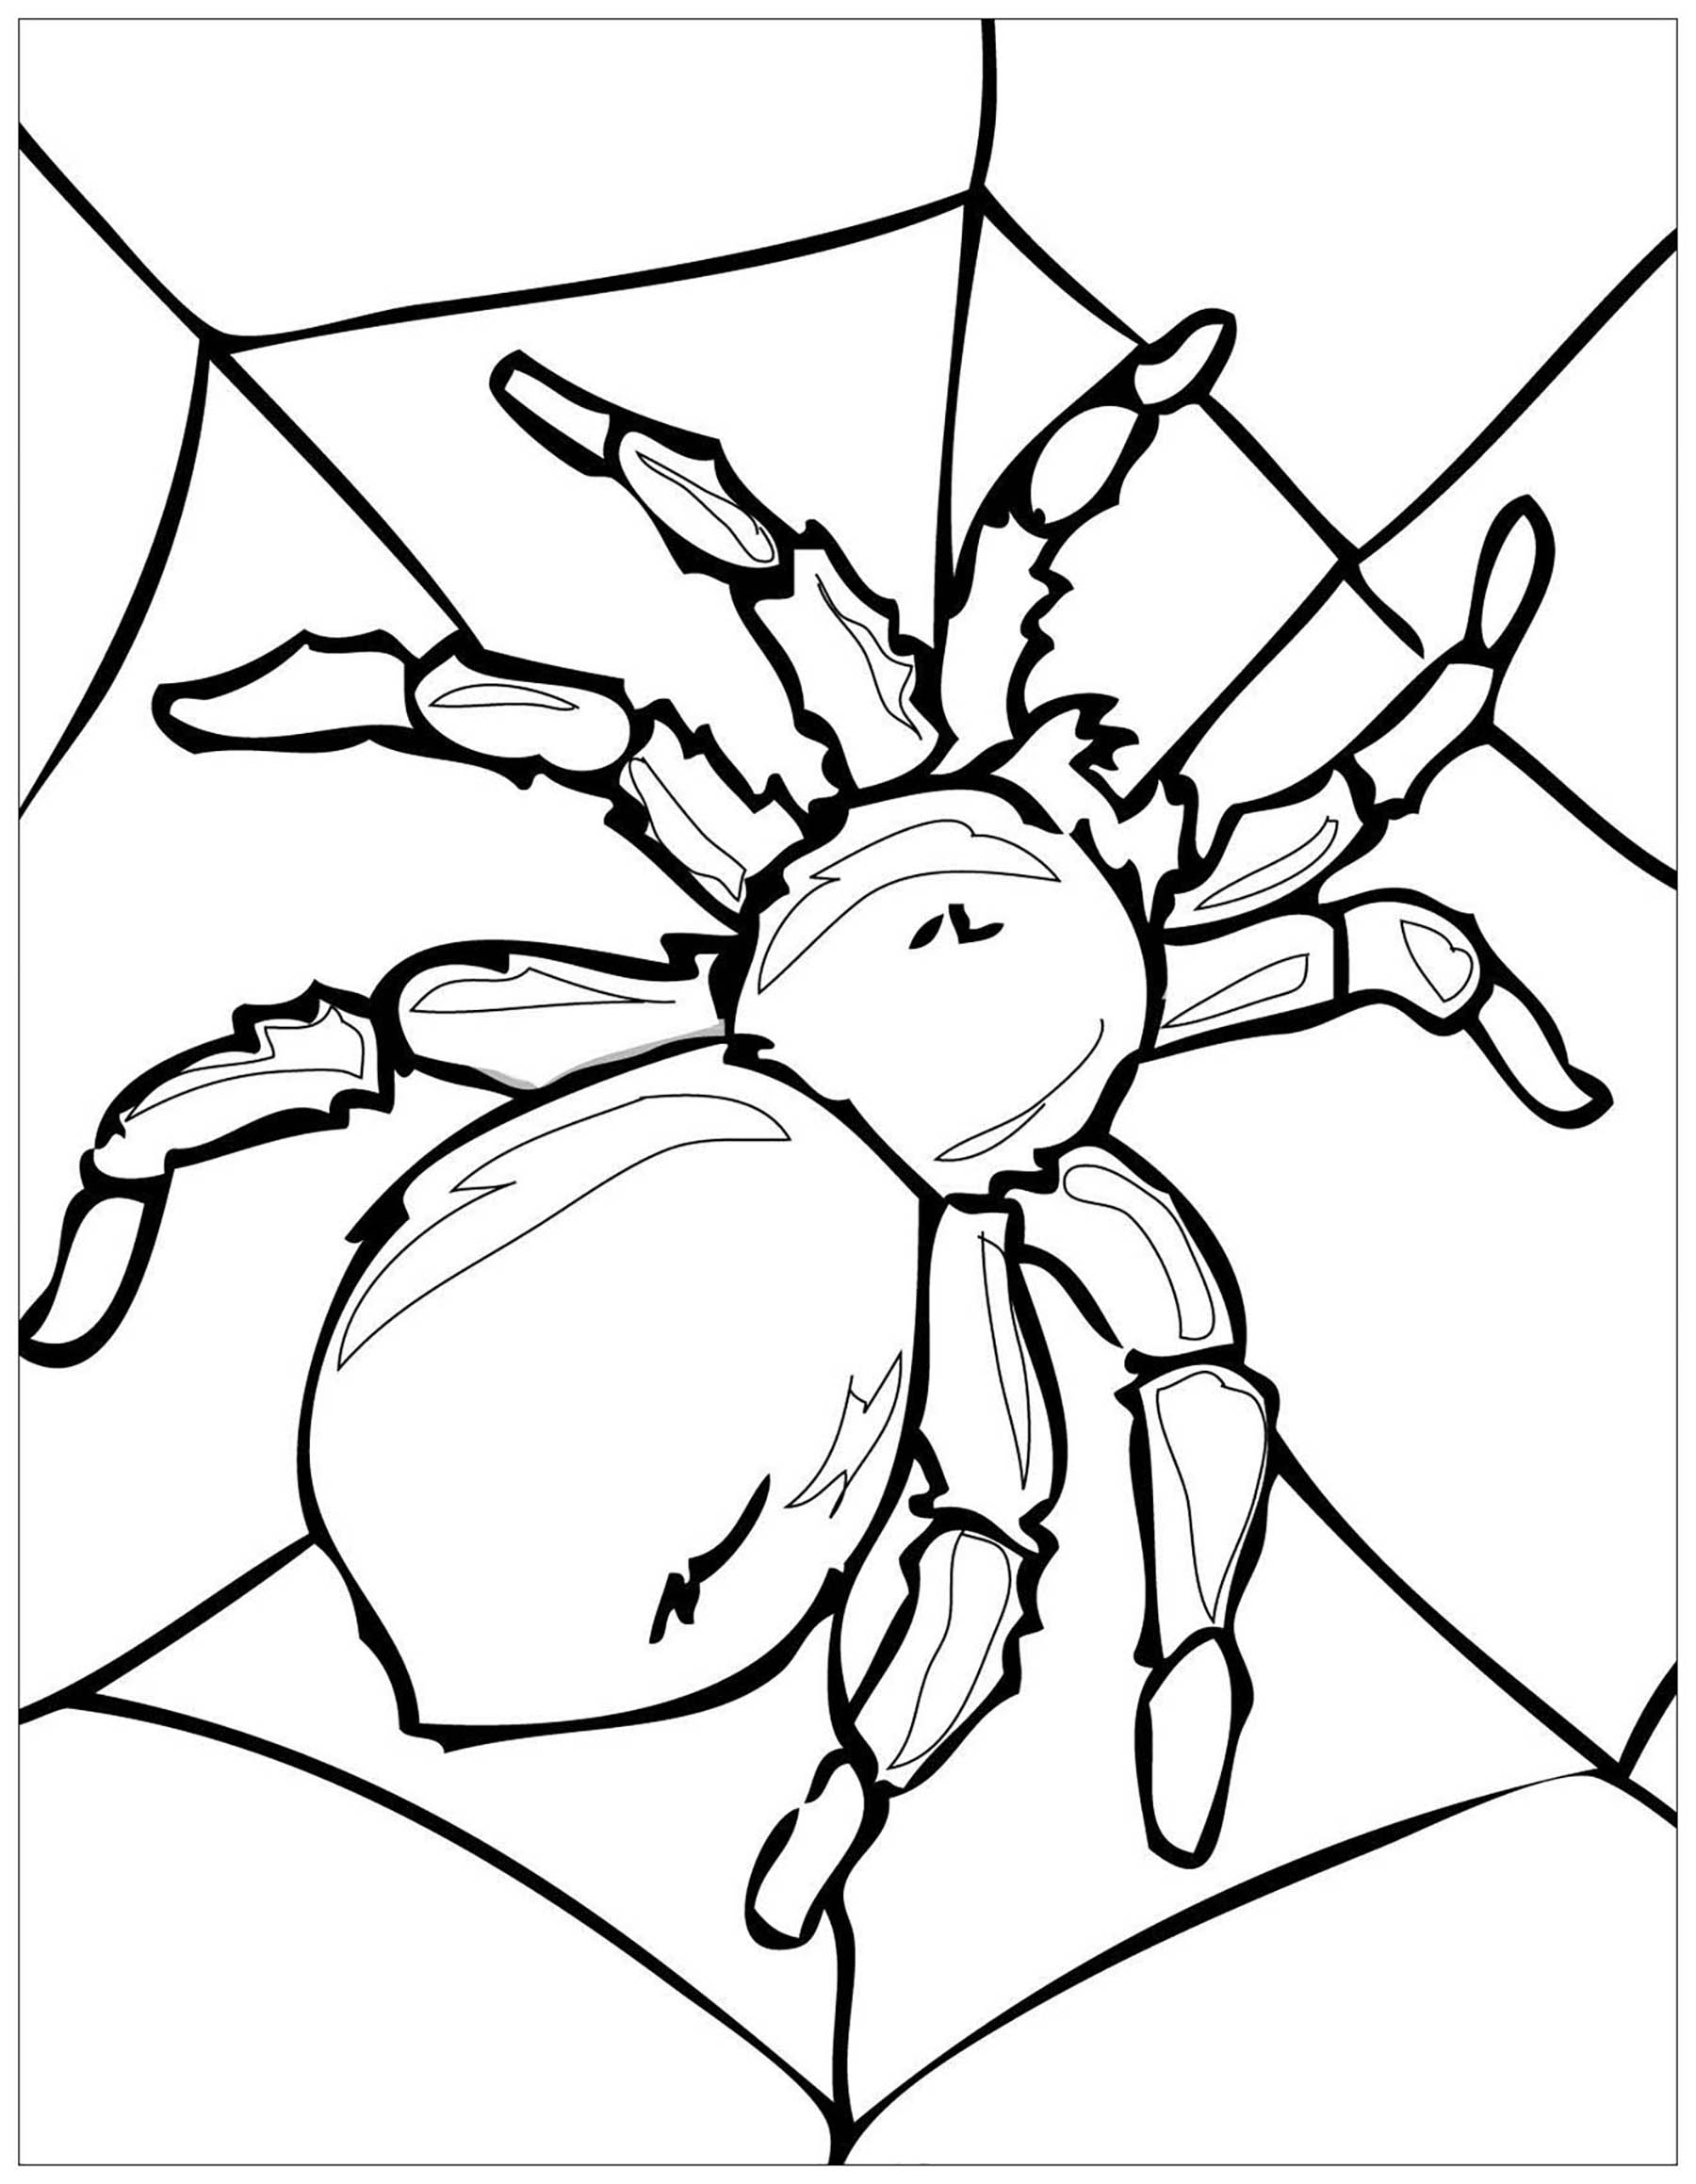 Colorir esta aranha grande na sua teia de aranha